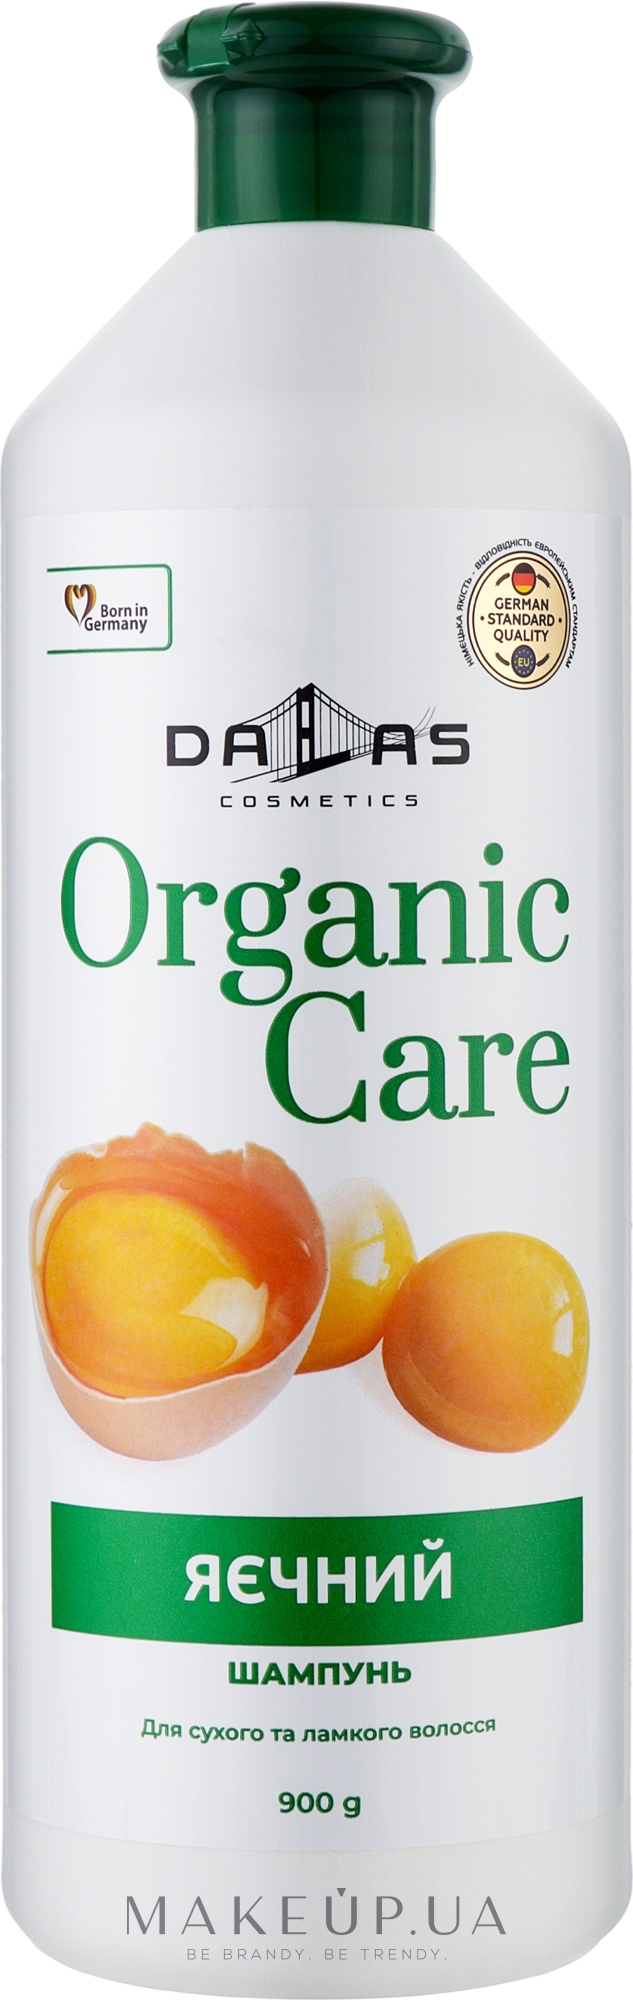 Шампунь для волосся "Яєчний" для сухого та ламкого волосся - Dalas Organic Care — фото 900g